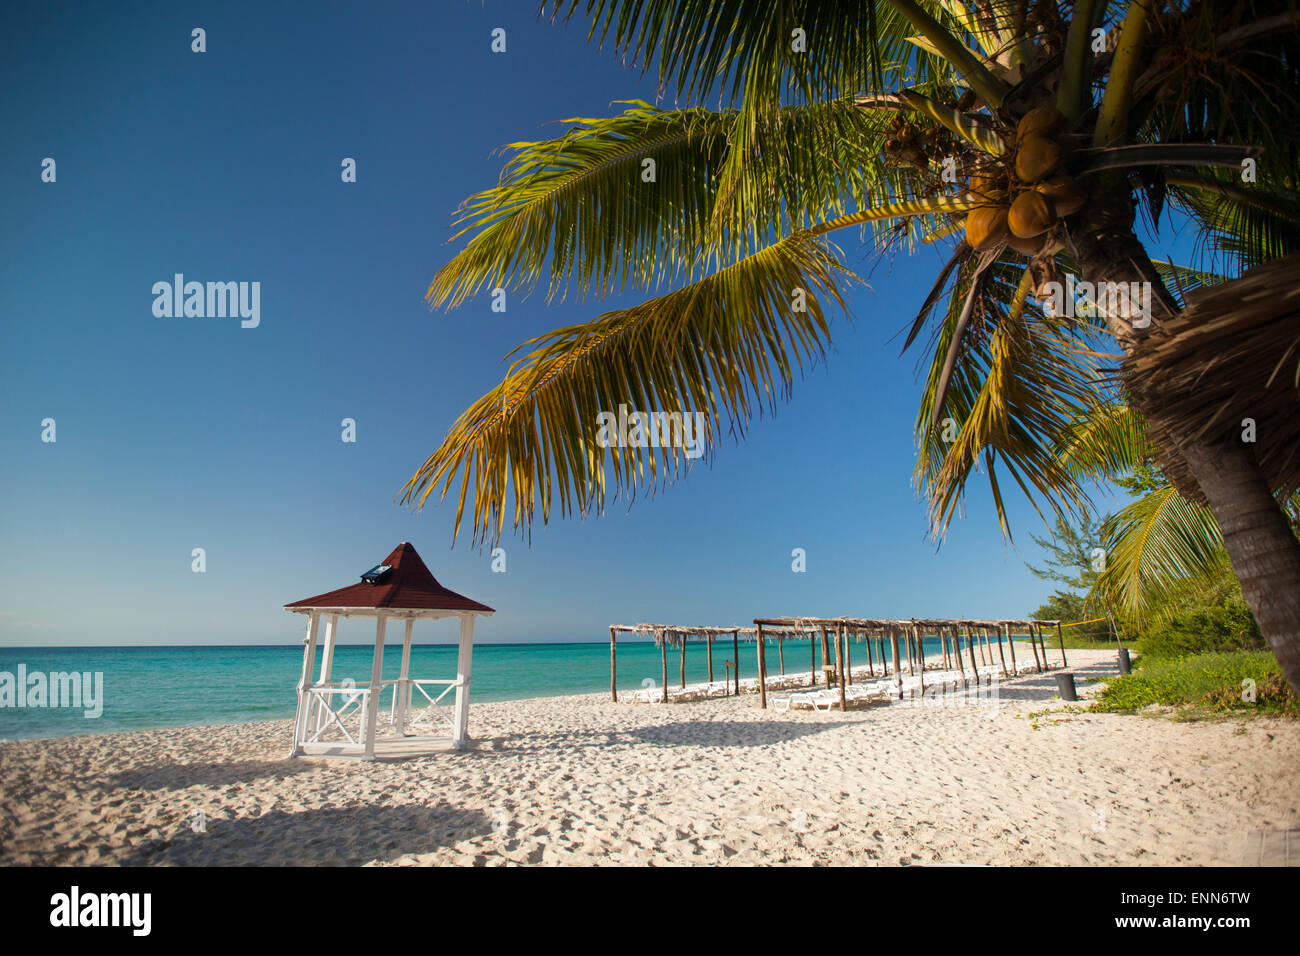 Beach paradise at  Playa La Jaula beach, Cayo Coco, Cuba. Stock Photo